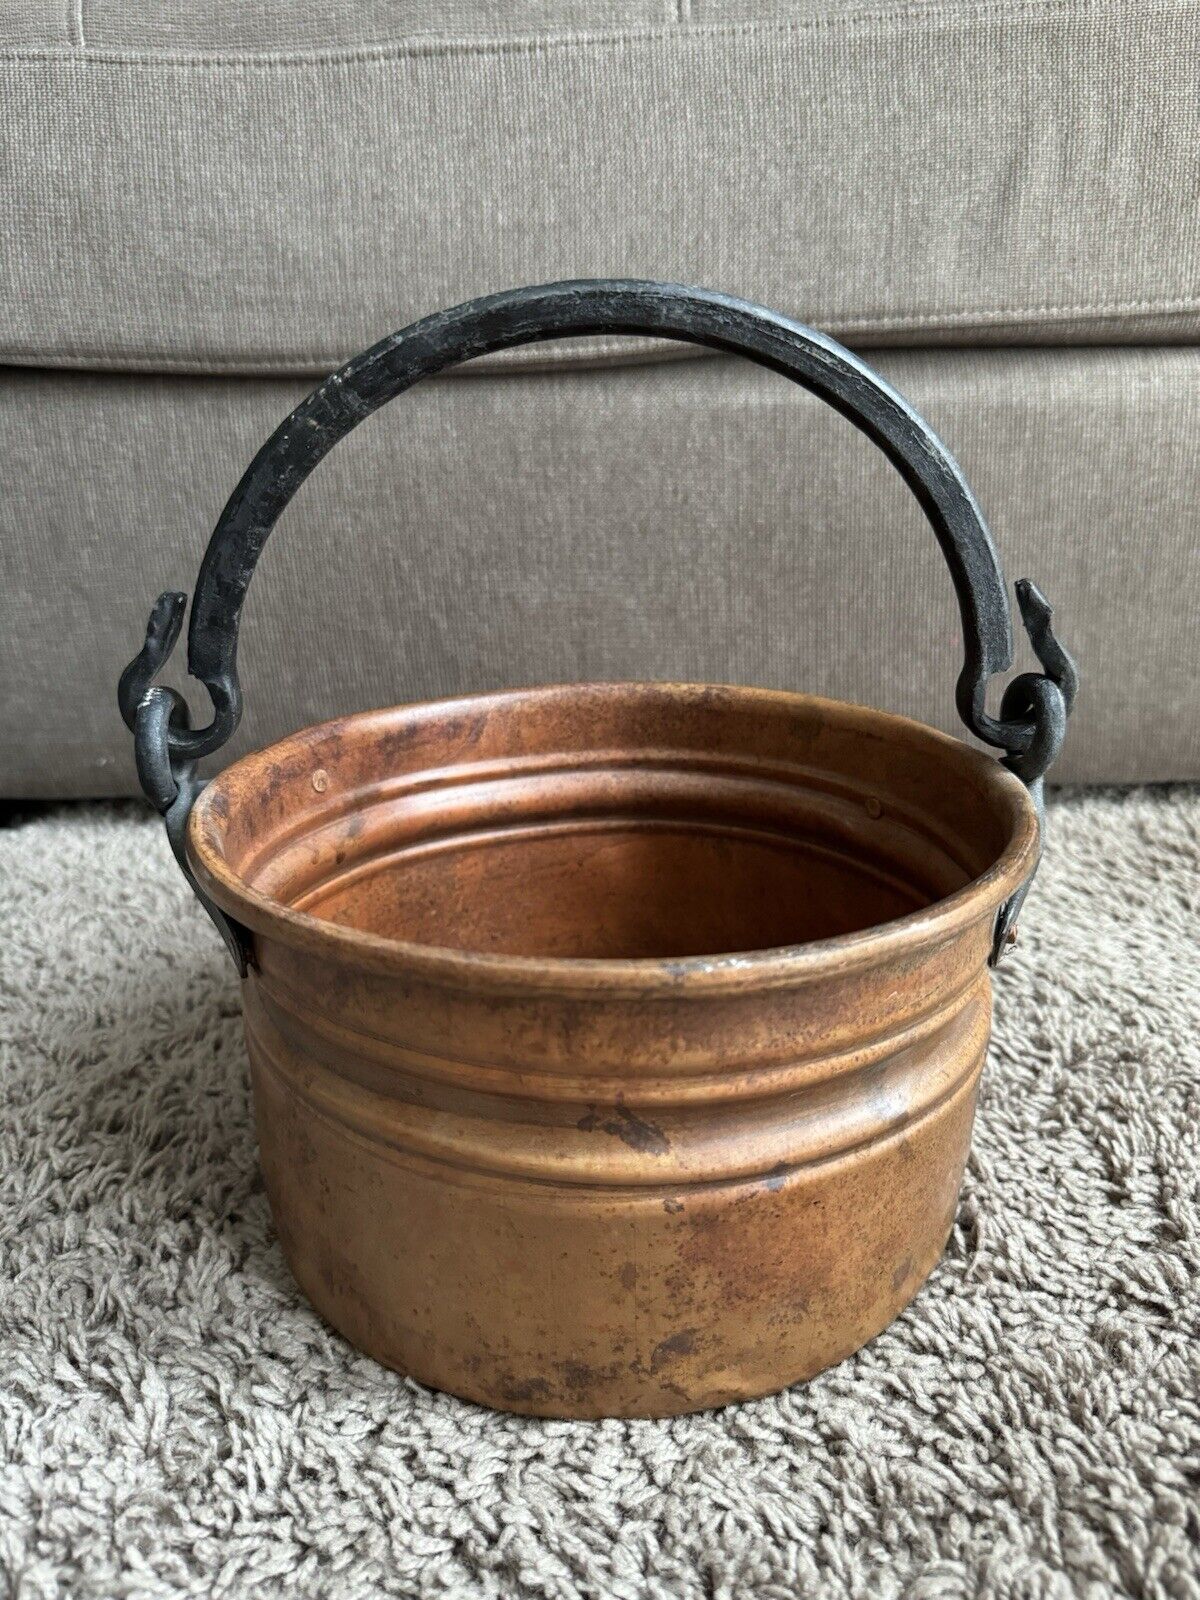 Vintage Hand Hammered Copper Brass Bucket Cauldron Pot 9” x 5” Made in Turkey